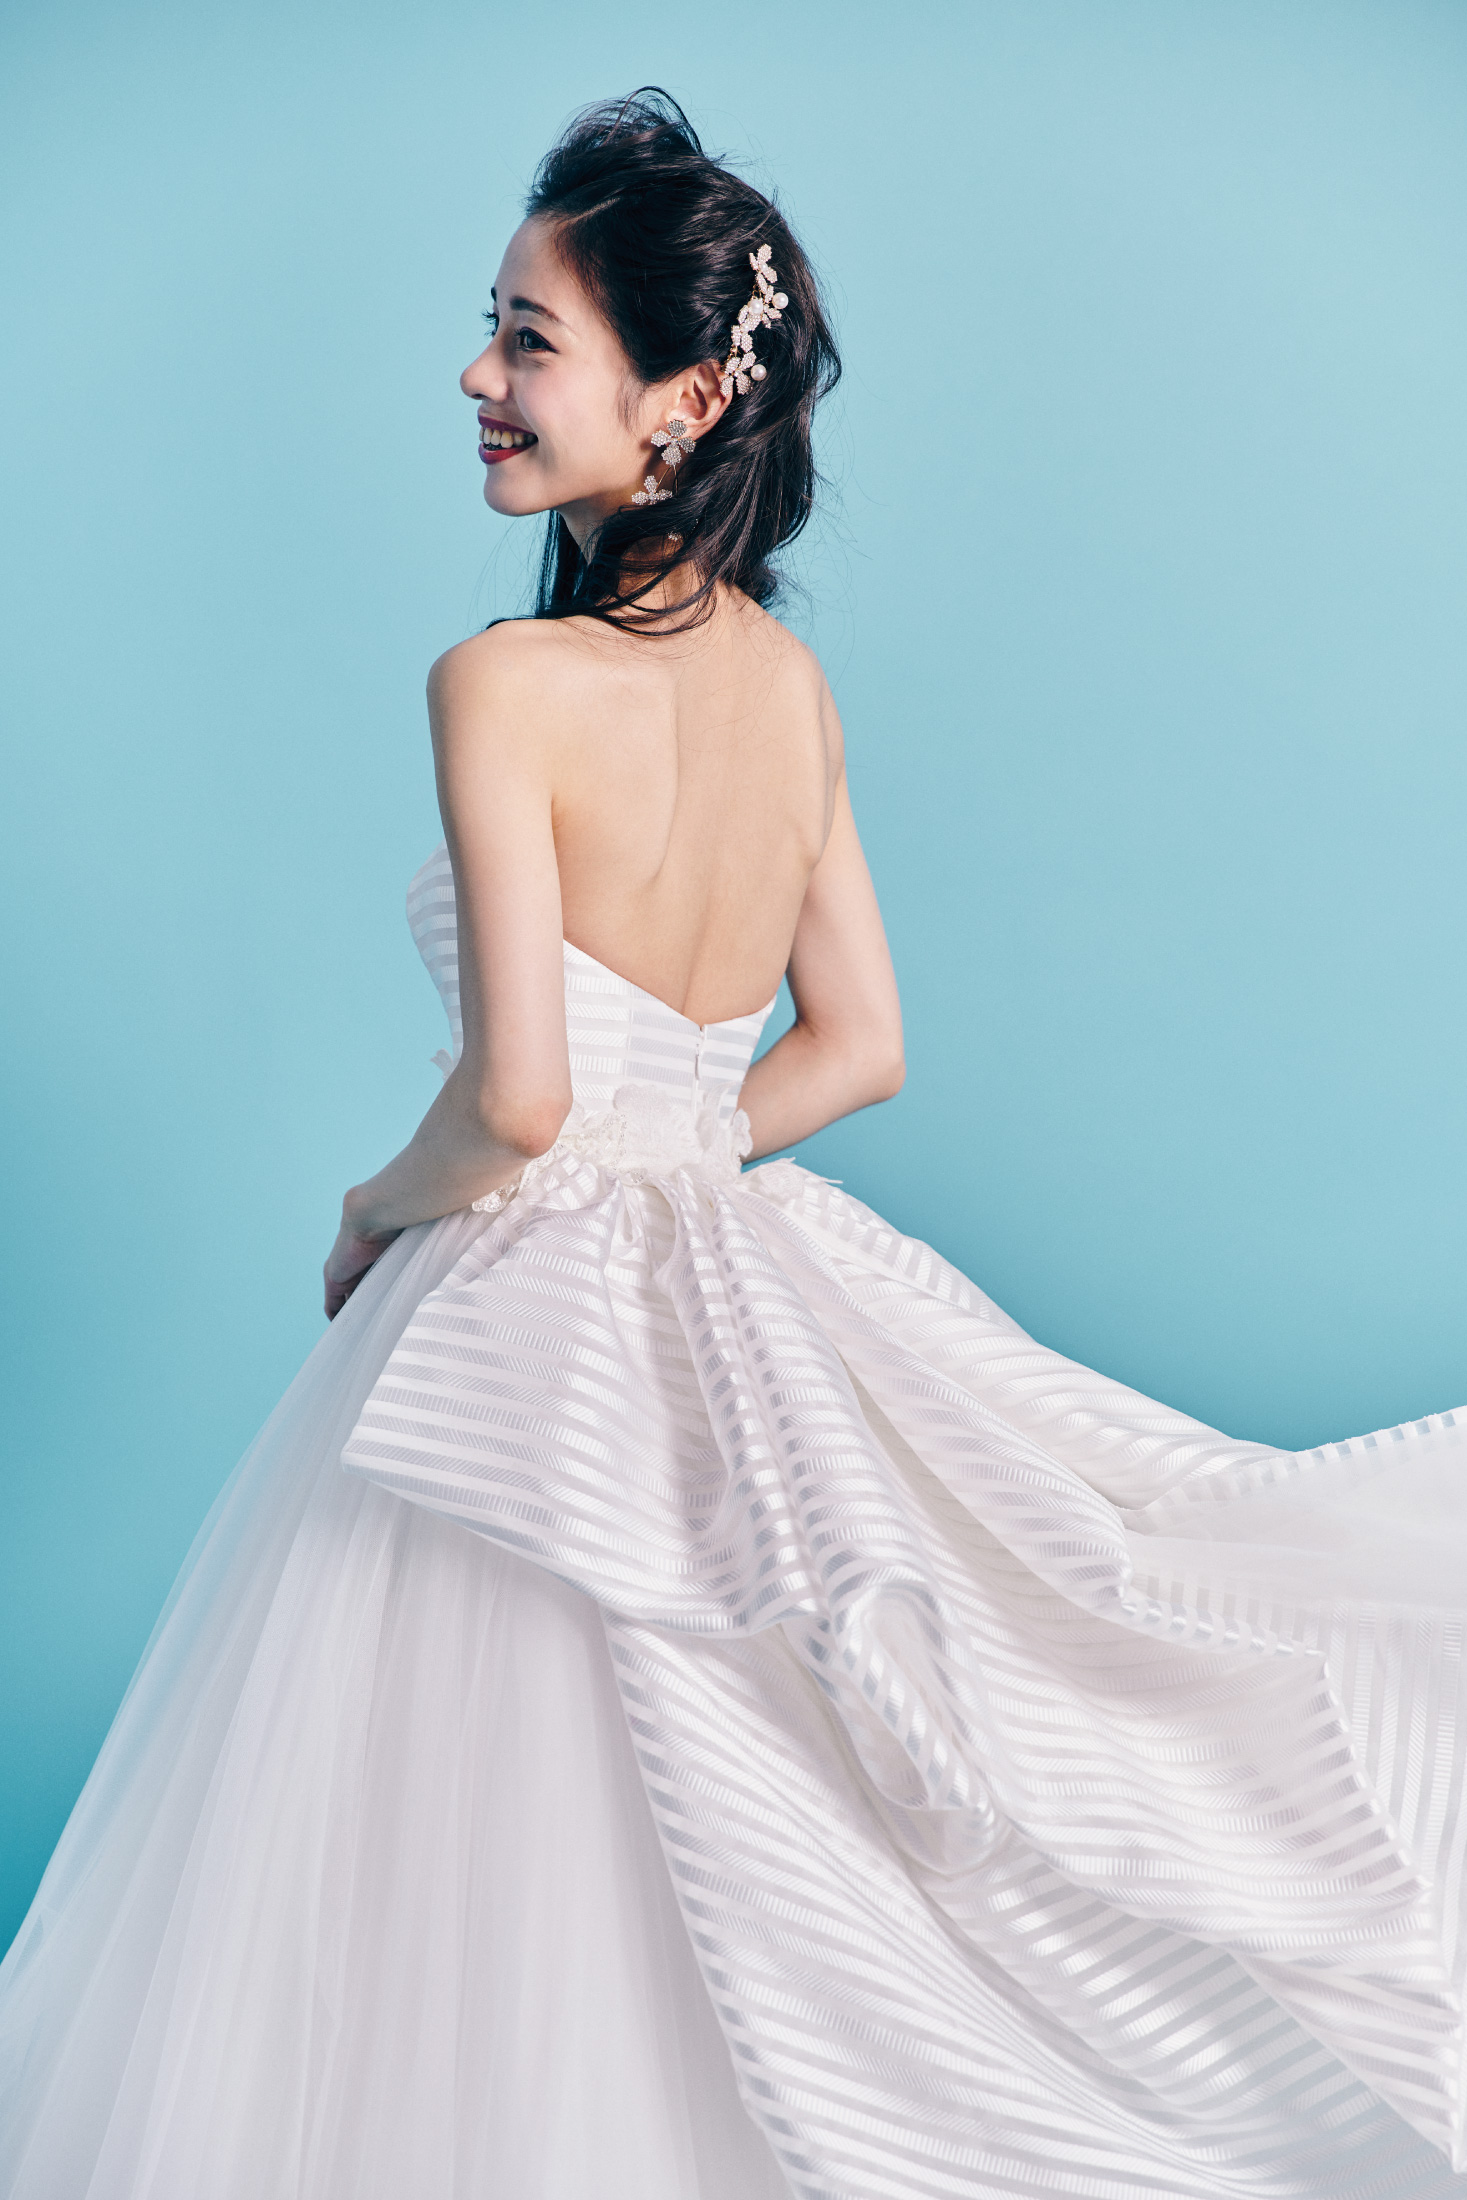 Chiara キアーラ【 ウエディングドレス レンタル】Aライン チュール シルクサテン ドレス